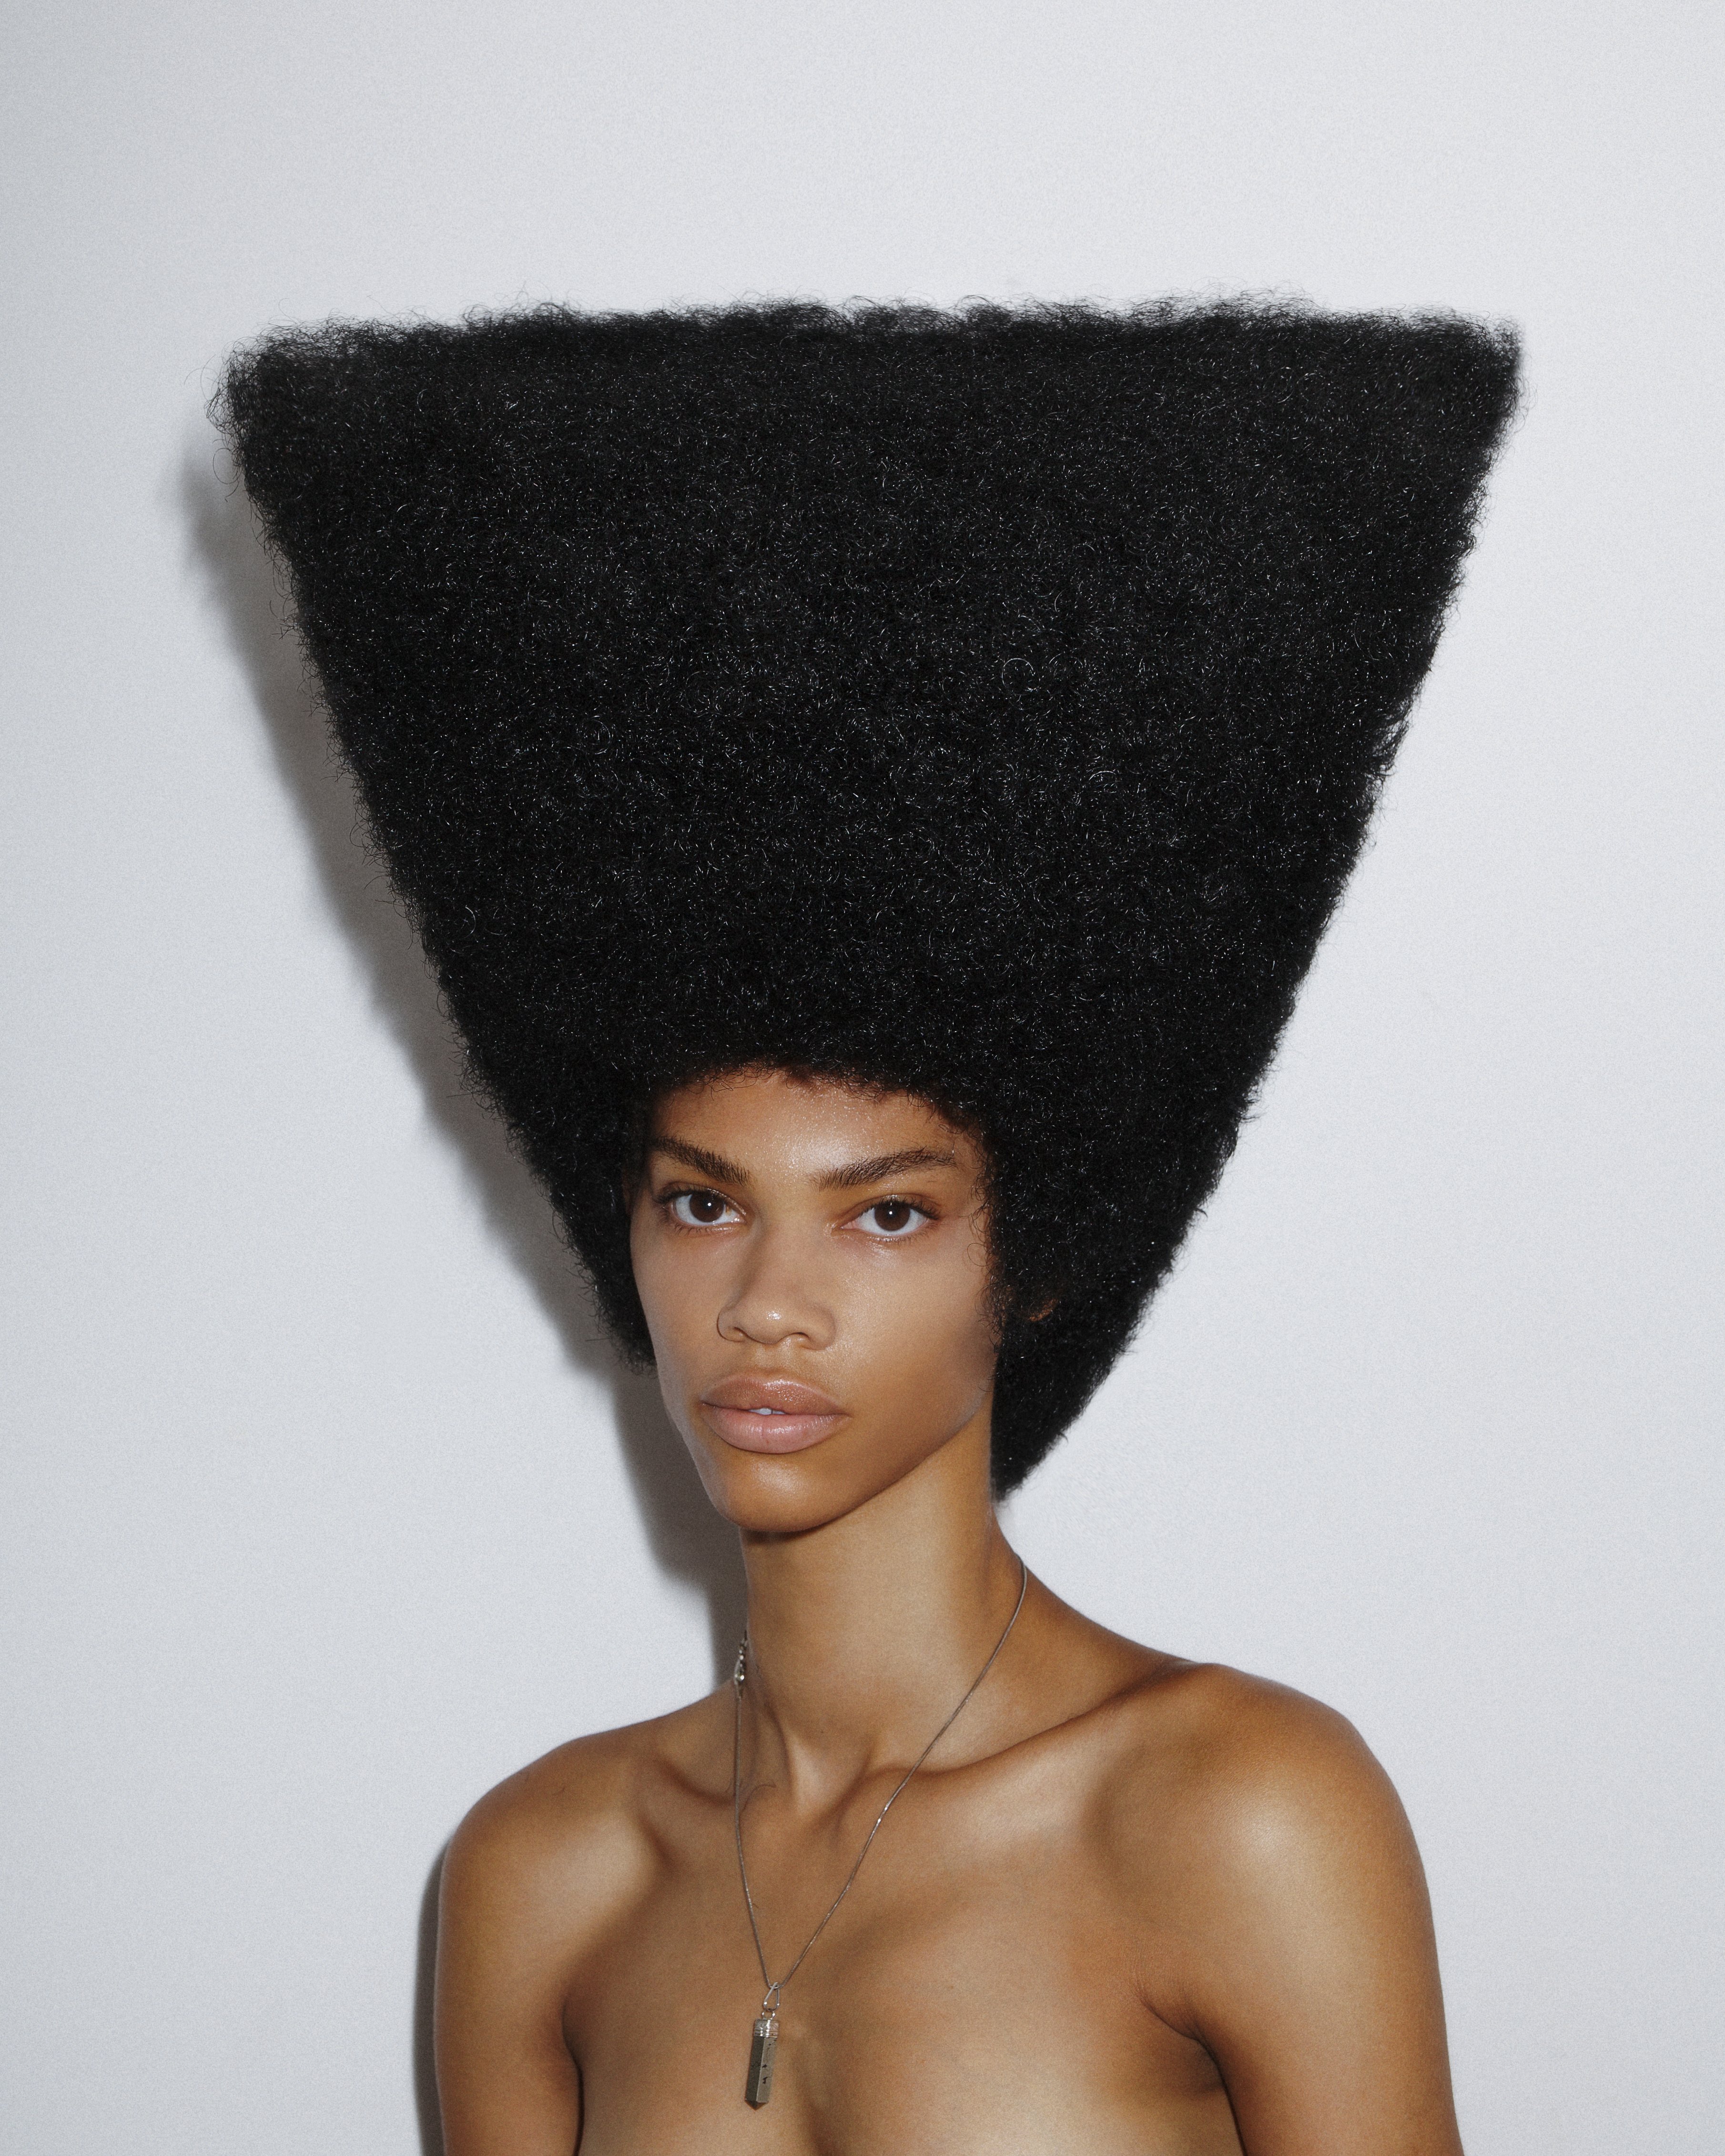 Style de cheveux réalisé par le coiffeur Charlie le Mindu. | Photo : Getty Images